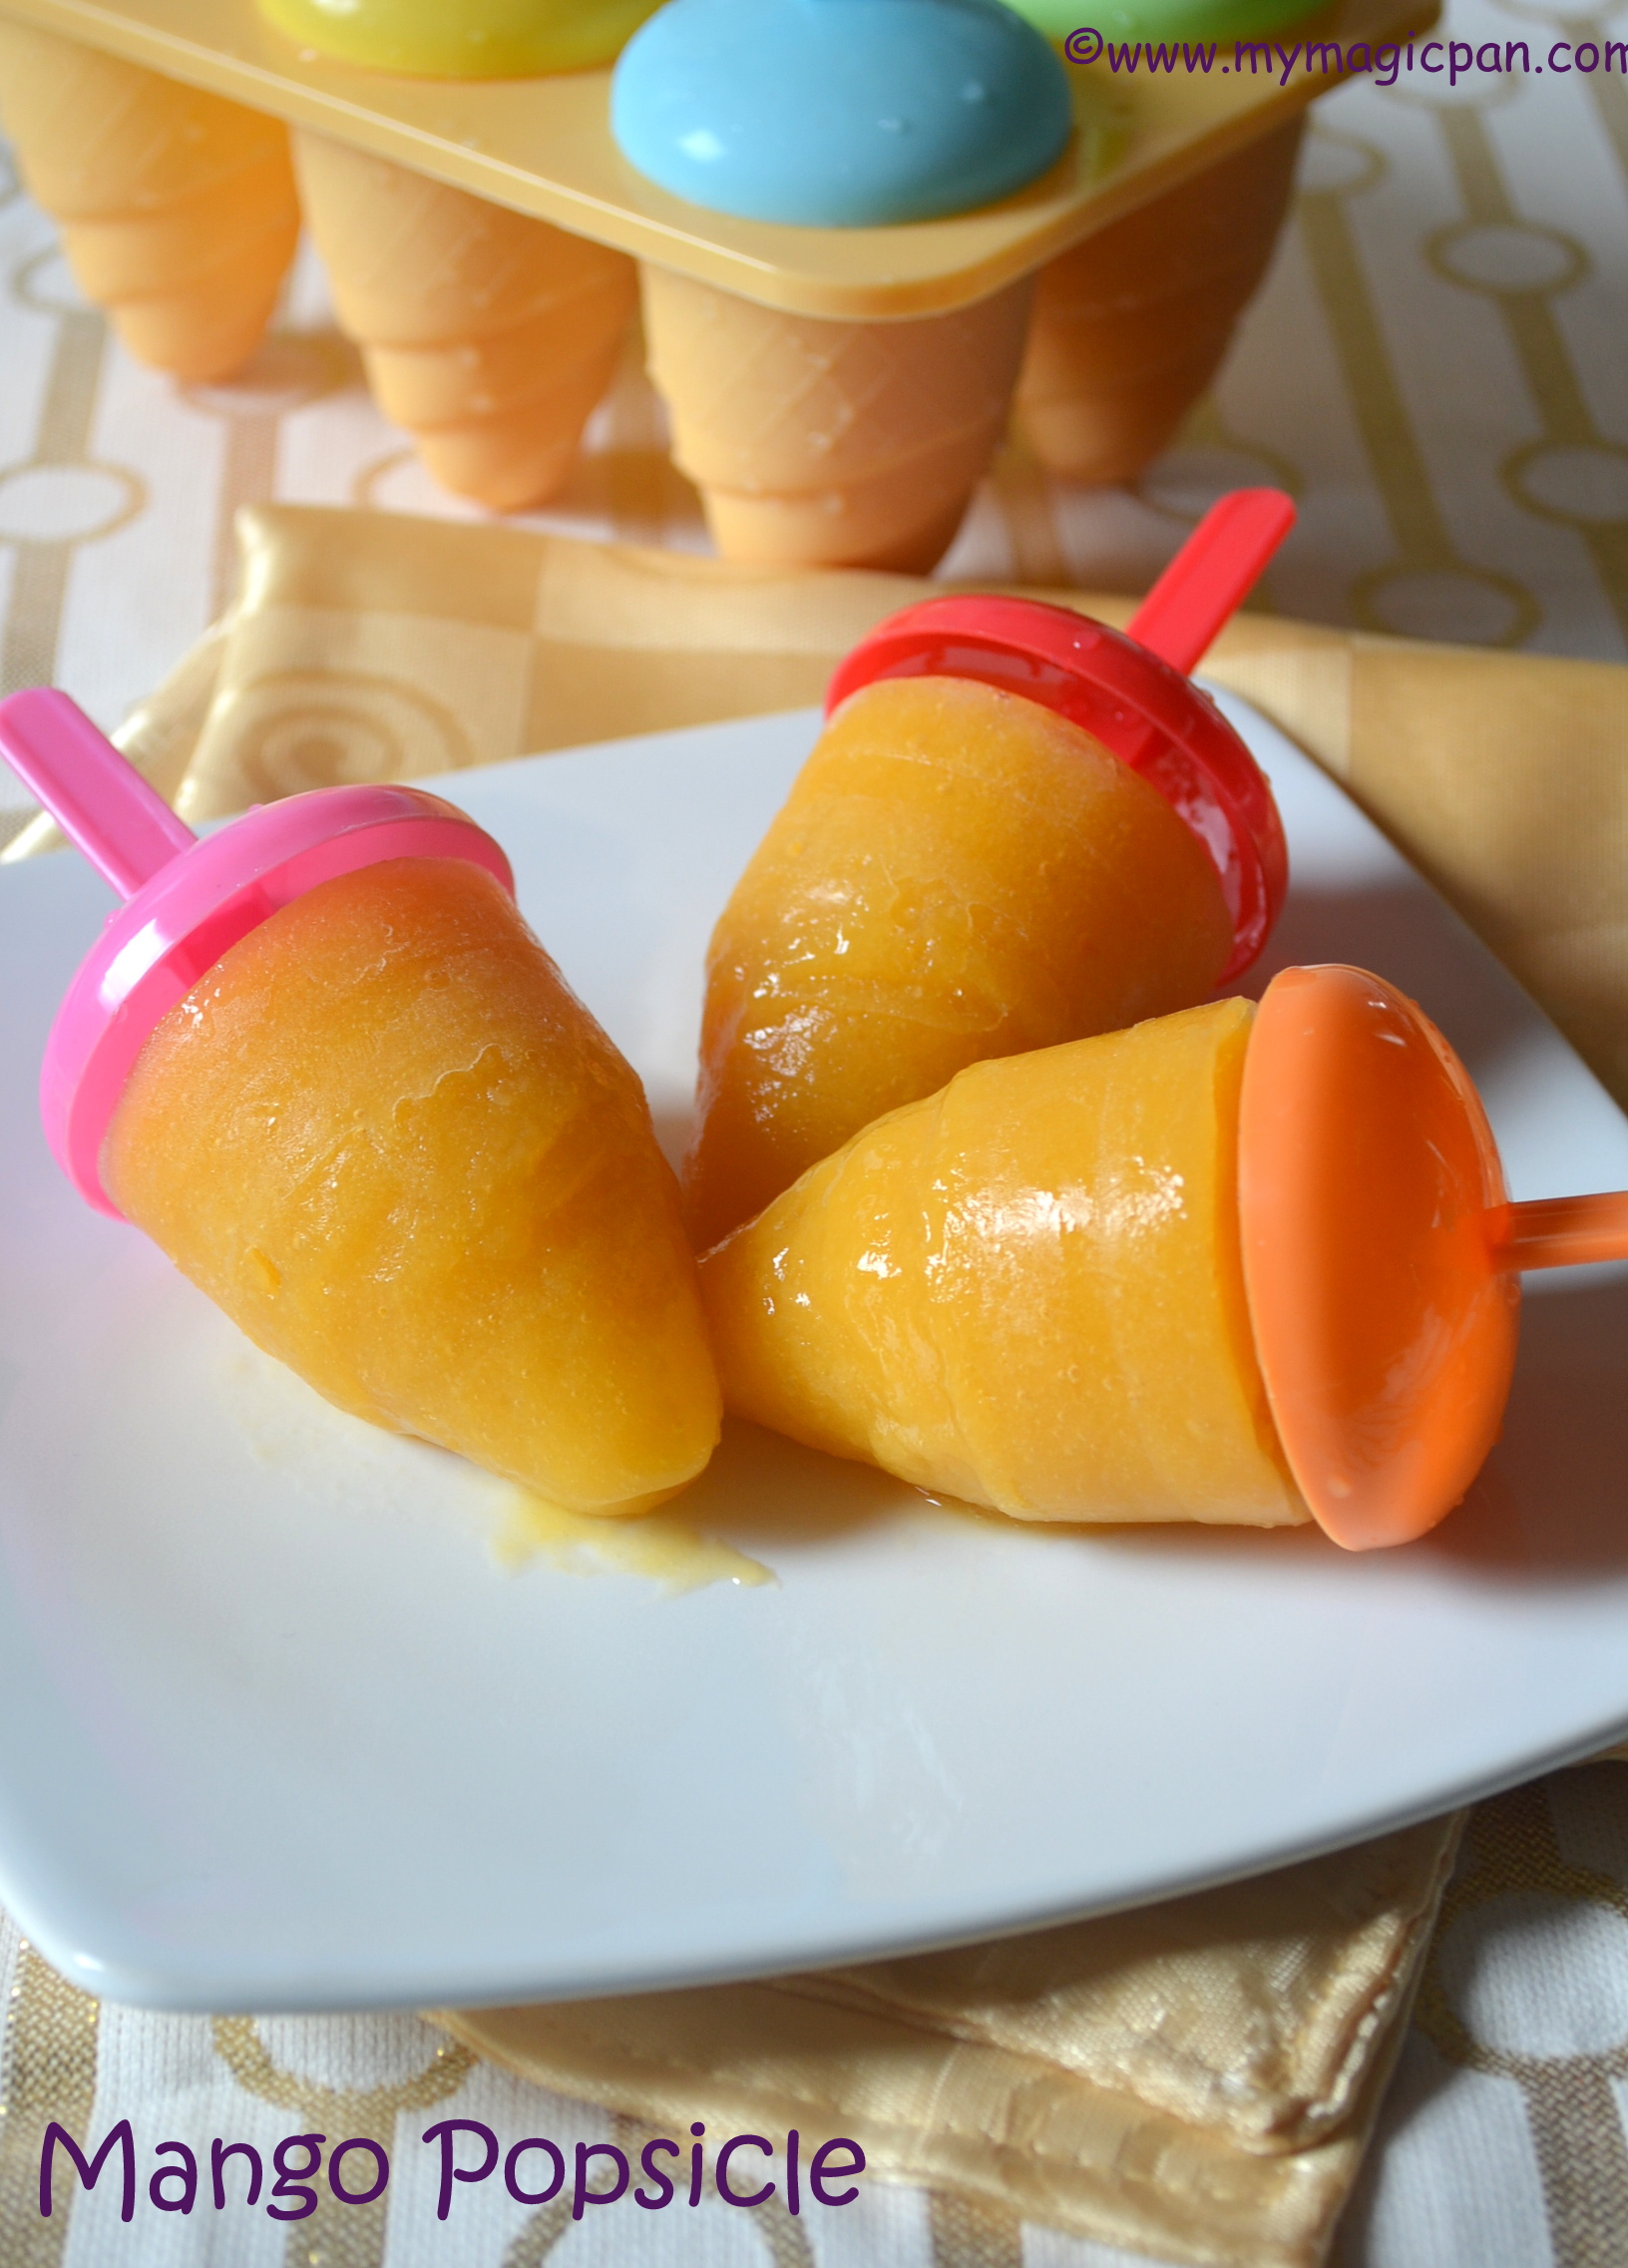 Mango Popsicle – Mango Orange Popsicle